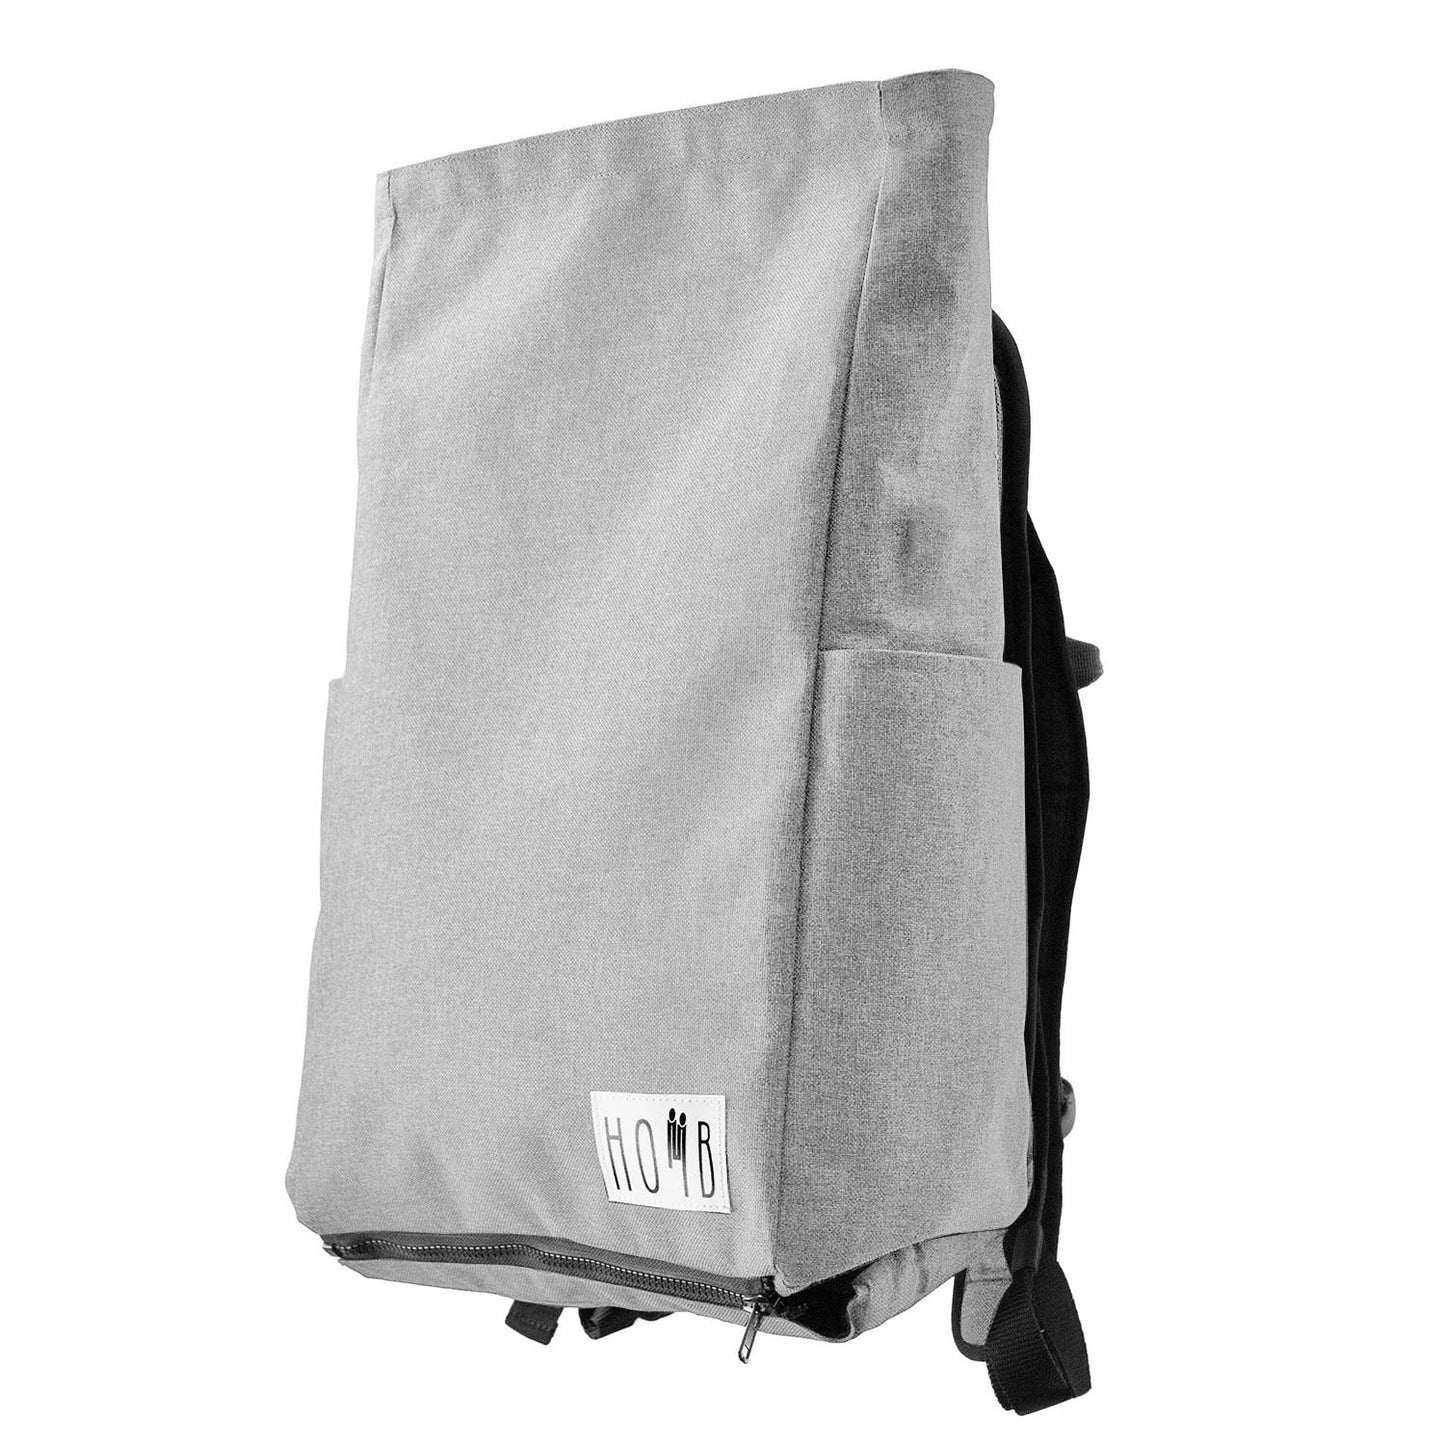 HOMB - Rucksack mit Kindertrage - Rückentrage ab 2 Jahre bis 25 kg-10